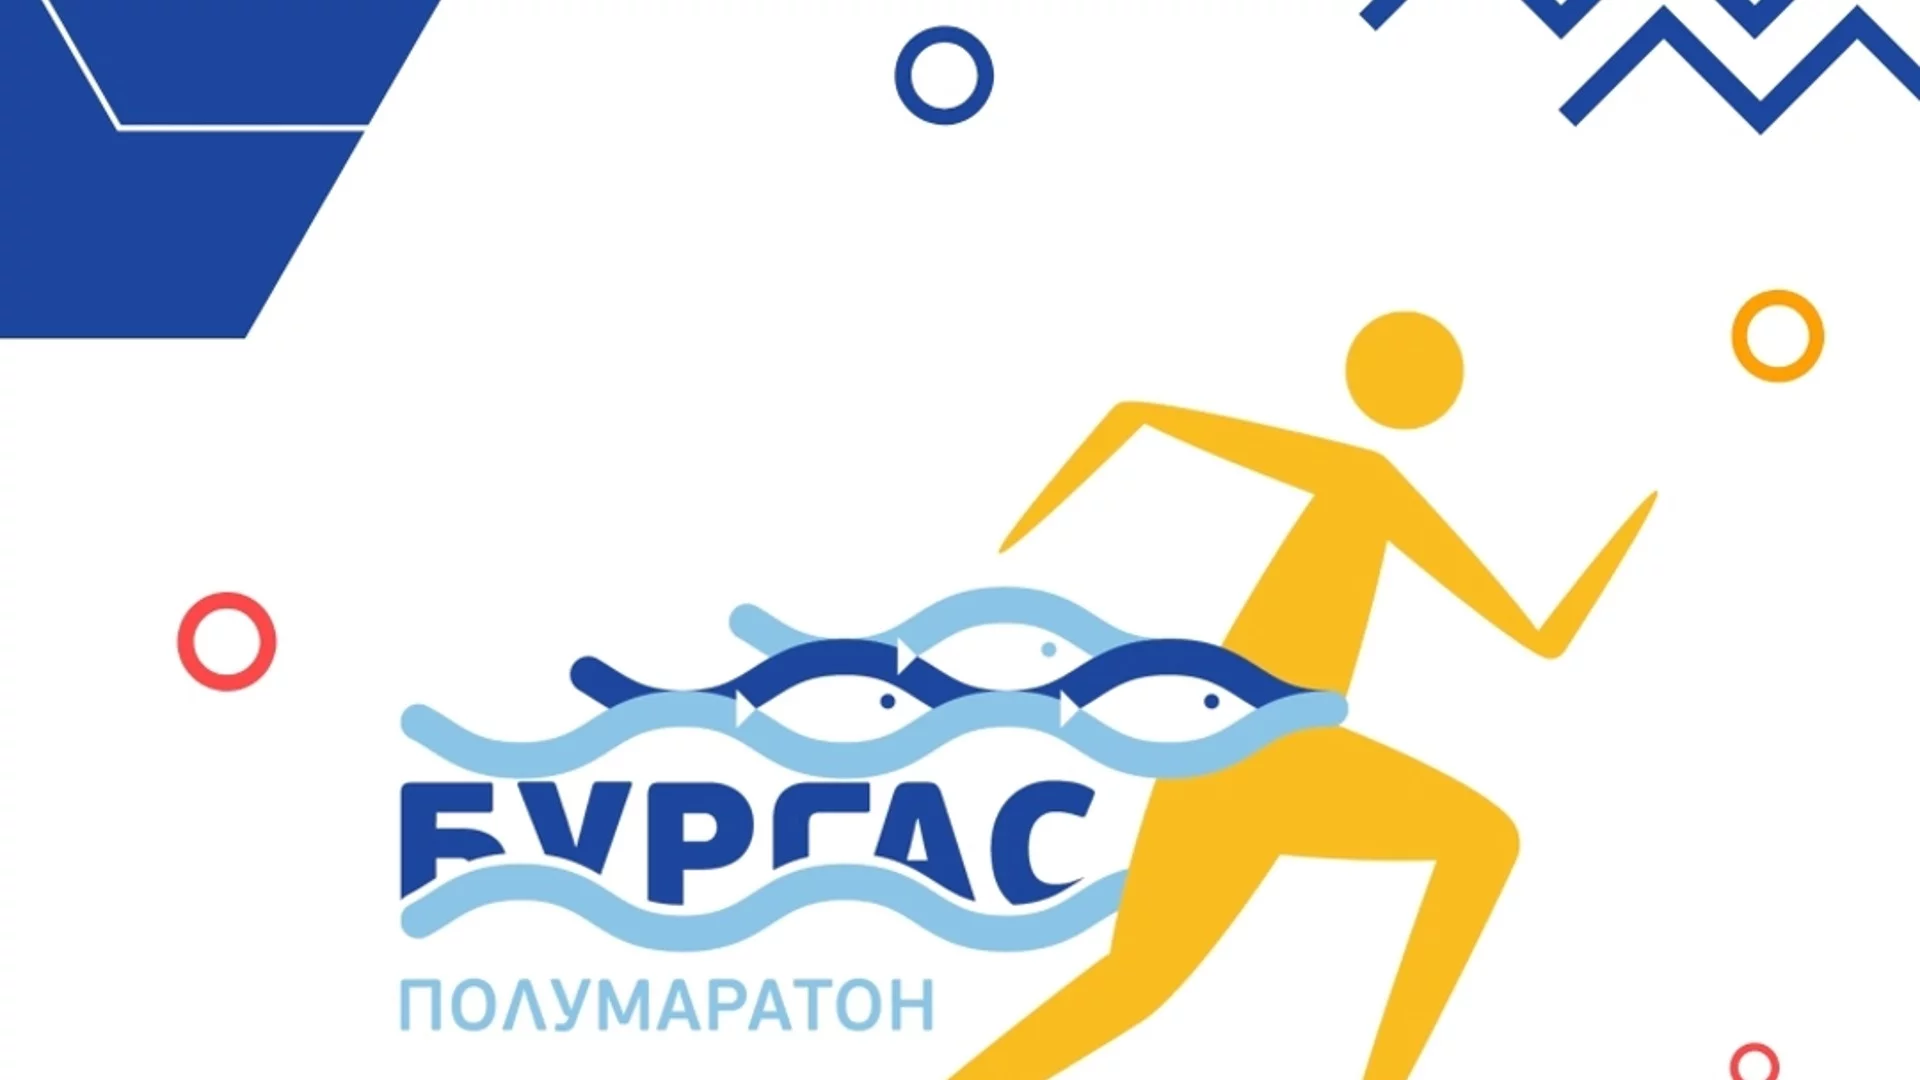 Община Бургас и Асоциация "Спорт в свободното време" организират полумаратон